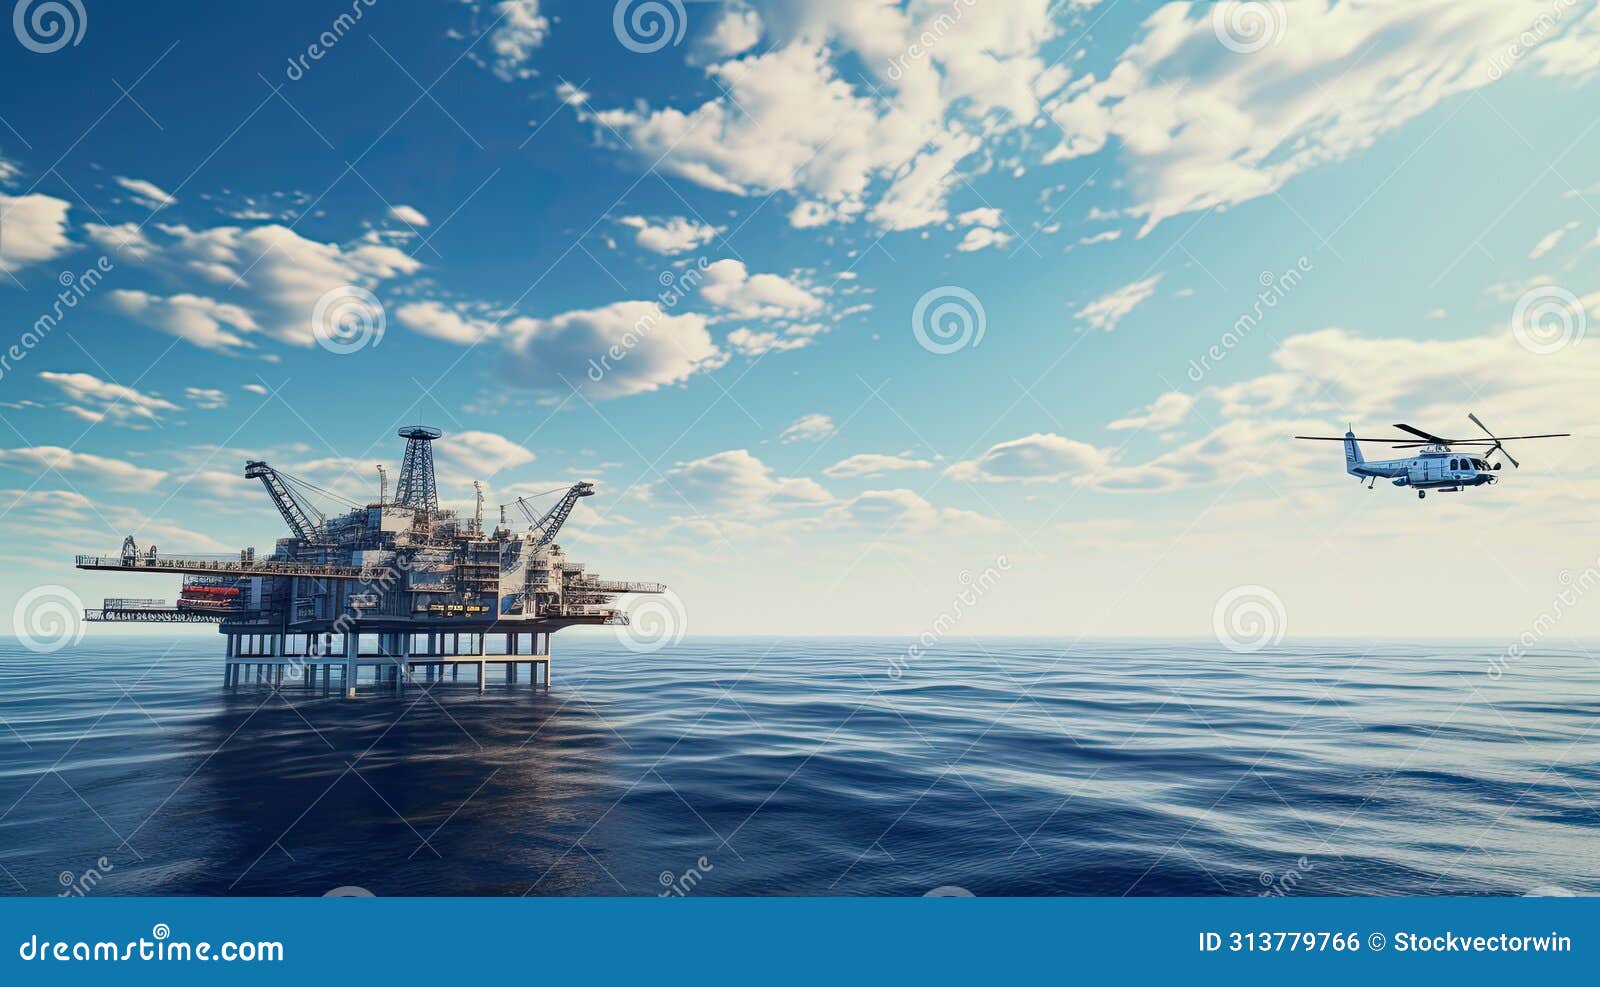 platform offshore oil rig